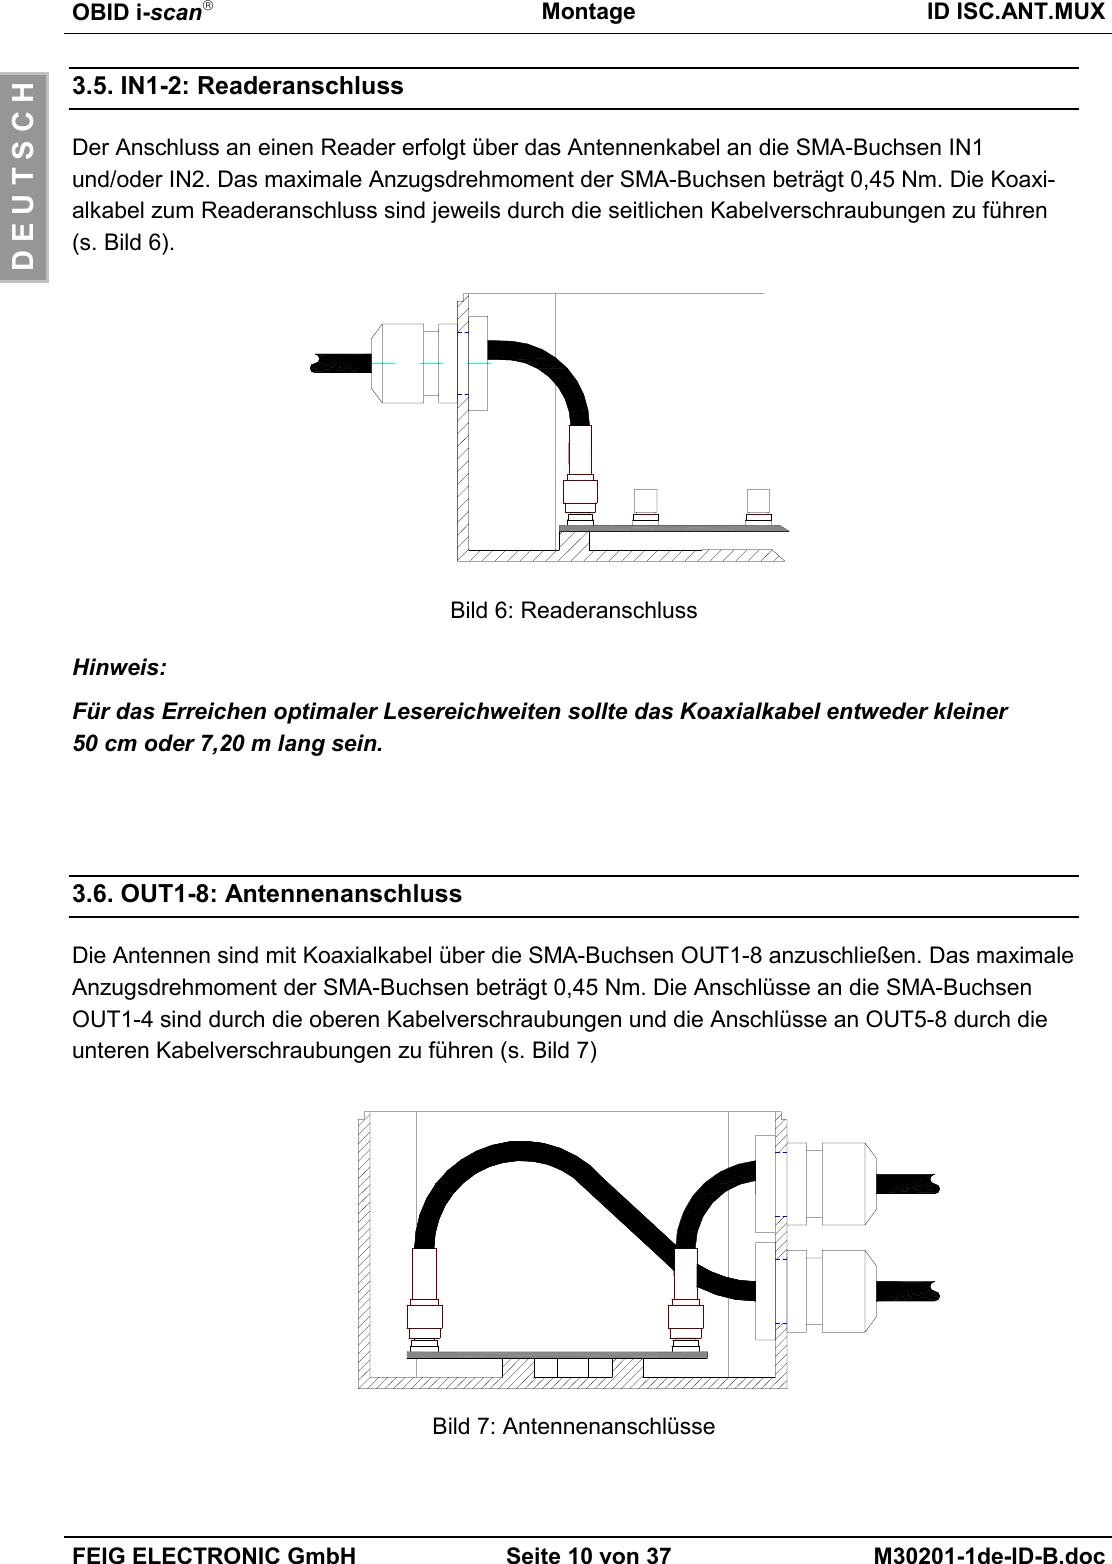 OBID i-scanMontage ID ISC.ANT.MUXFEIG ELECTRONIC GmbH Seite 10 von 37 M30201-1de-ID-B.docD E U T S C H3.5. IN1-2: ReaderanschlussDer Anschluss an einen Reader erfolgt über das Antennenkabel an die SMA-Buchsen IN1und/oder IN2. Das maximale Anzugsdrehmoment der SMA-Buchsen beträgt 0,45 Nm. Die Koaxi-alkabel zum Readeranschluss sind jeweils durch die seitlichen Kabelverschraubungen zu führen(s. Bild 6).Bild 6: ReaderanschlussHinweis:Für das Erreichen optimaler Lesereichweiten sollte das Koaxialkabel entweder kleiner50 cm oder 7,20 m lang sein.3.6. OUT1-8: AntennenanschlussDie Antennen sind mit Koaxialkabel über die SMA-Buchsen OUT1-8 anzuschließen. Das maximaleAnzugsdrehmoment der SMA-Buchsen beträgt 0,45 Nm. Die Anschlüsse an die SMA-BuchsenOUT1-4 sind durch die oberen Kabelverschraubungen und die Anschlüsse an OUT5-8 durch dieunteren Kabelverschraubungen zu führen (s. Bild 7)Bild 7: Antennenanschlüsse